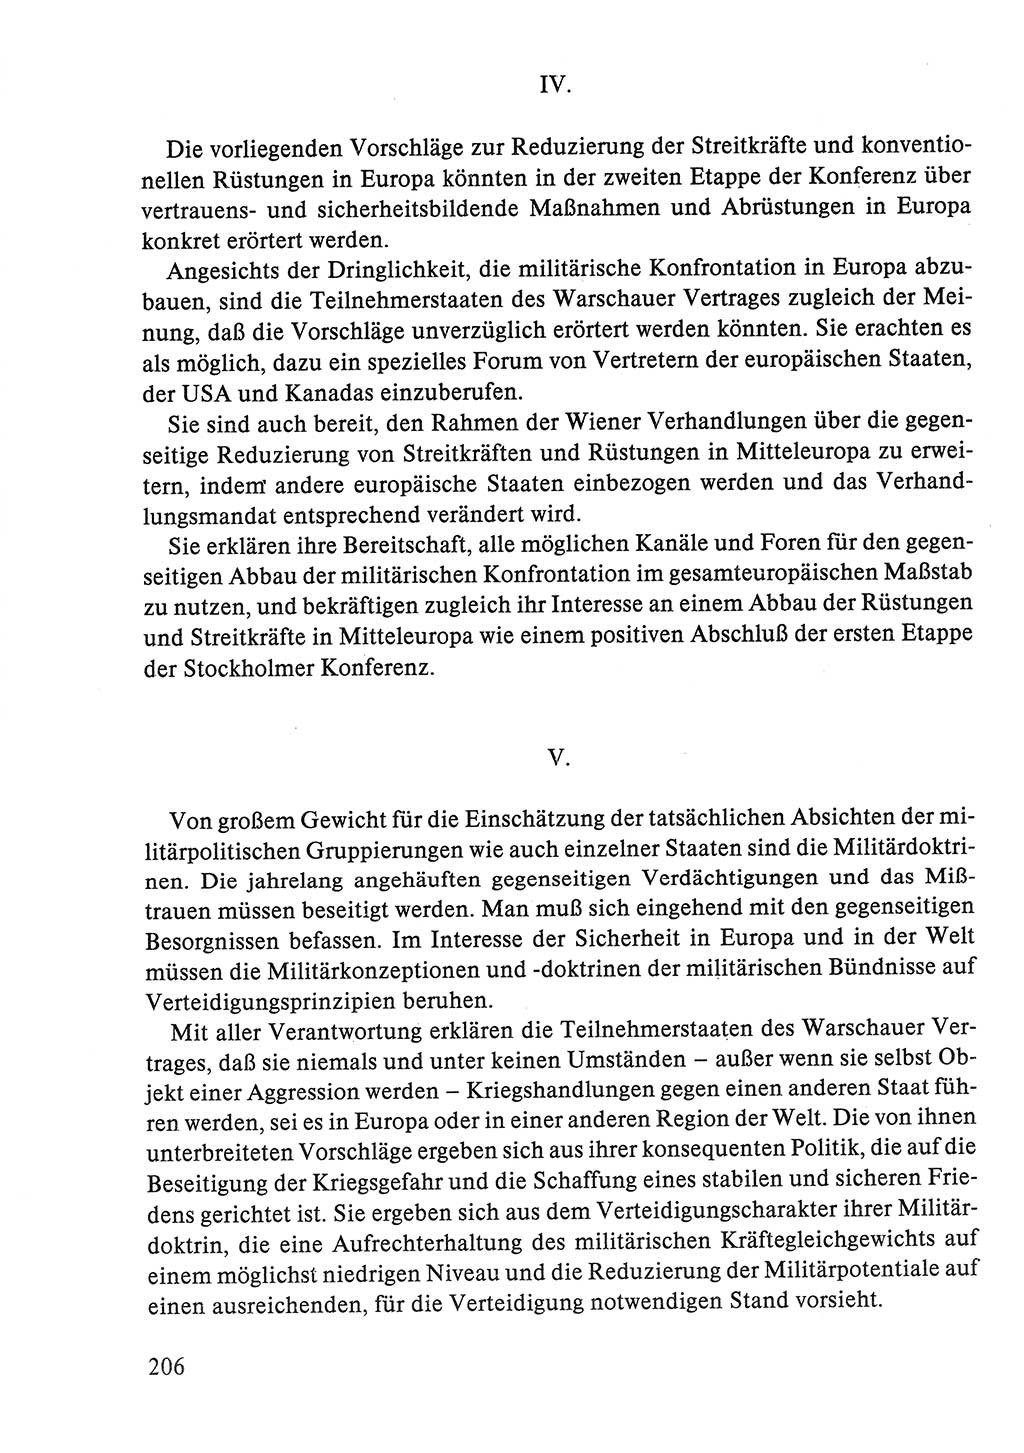 Dokumente der Sozialistischen Einheitspartei Deutschlands (SED) [Deutsche Demokratische Republik (DDR)] 1986-1987, Seite 206 (Dok. SED DDR 1986-1987, S. 206)